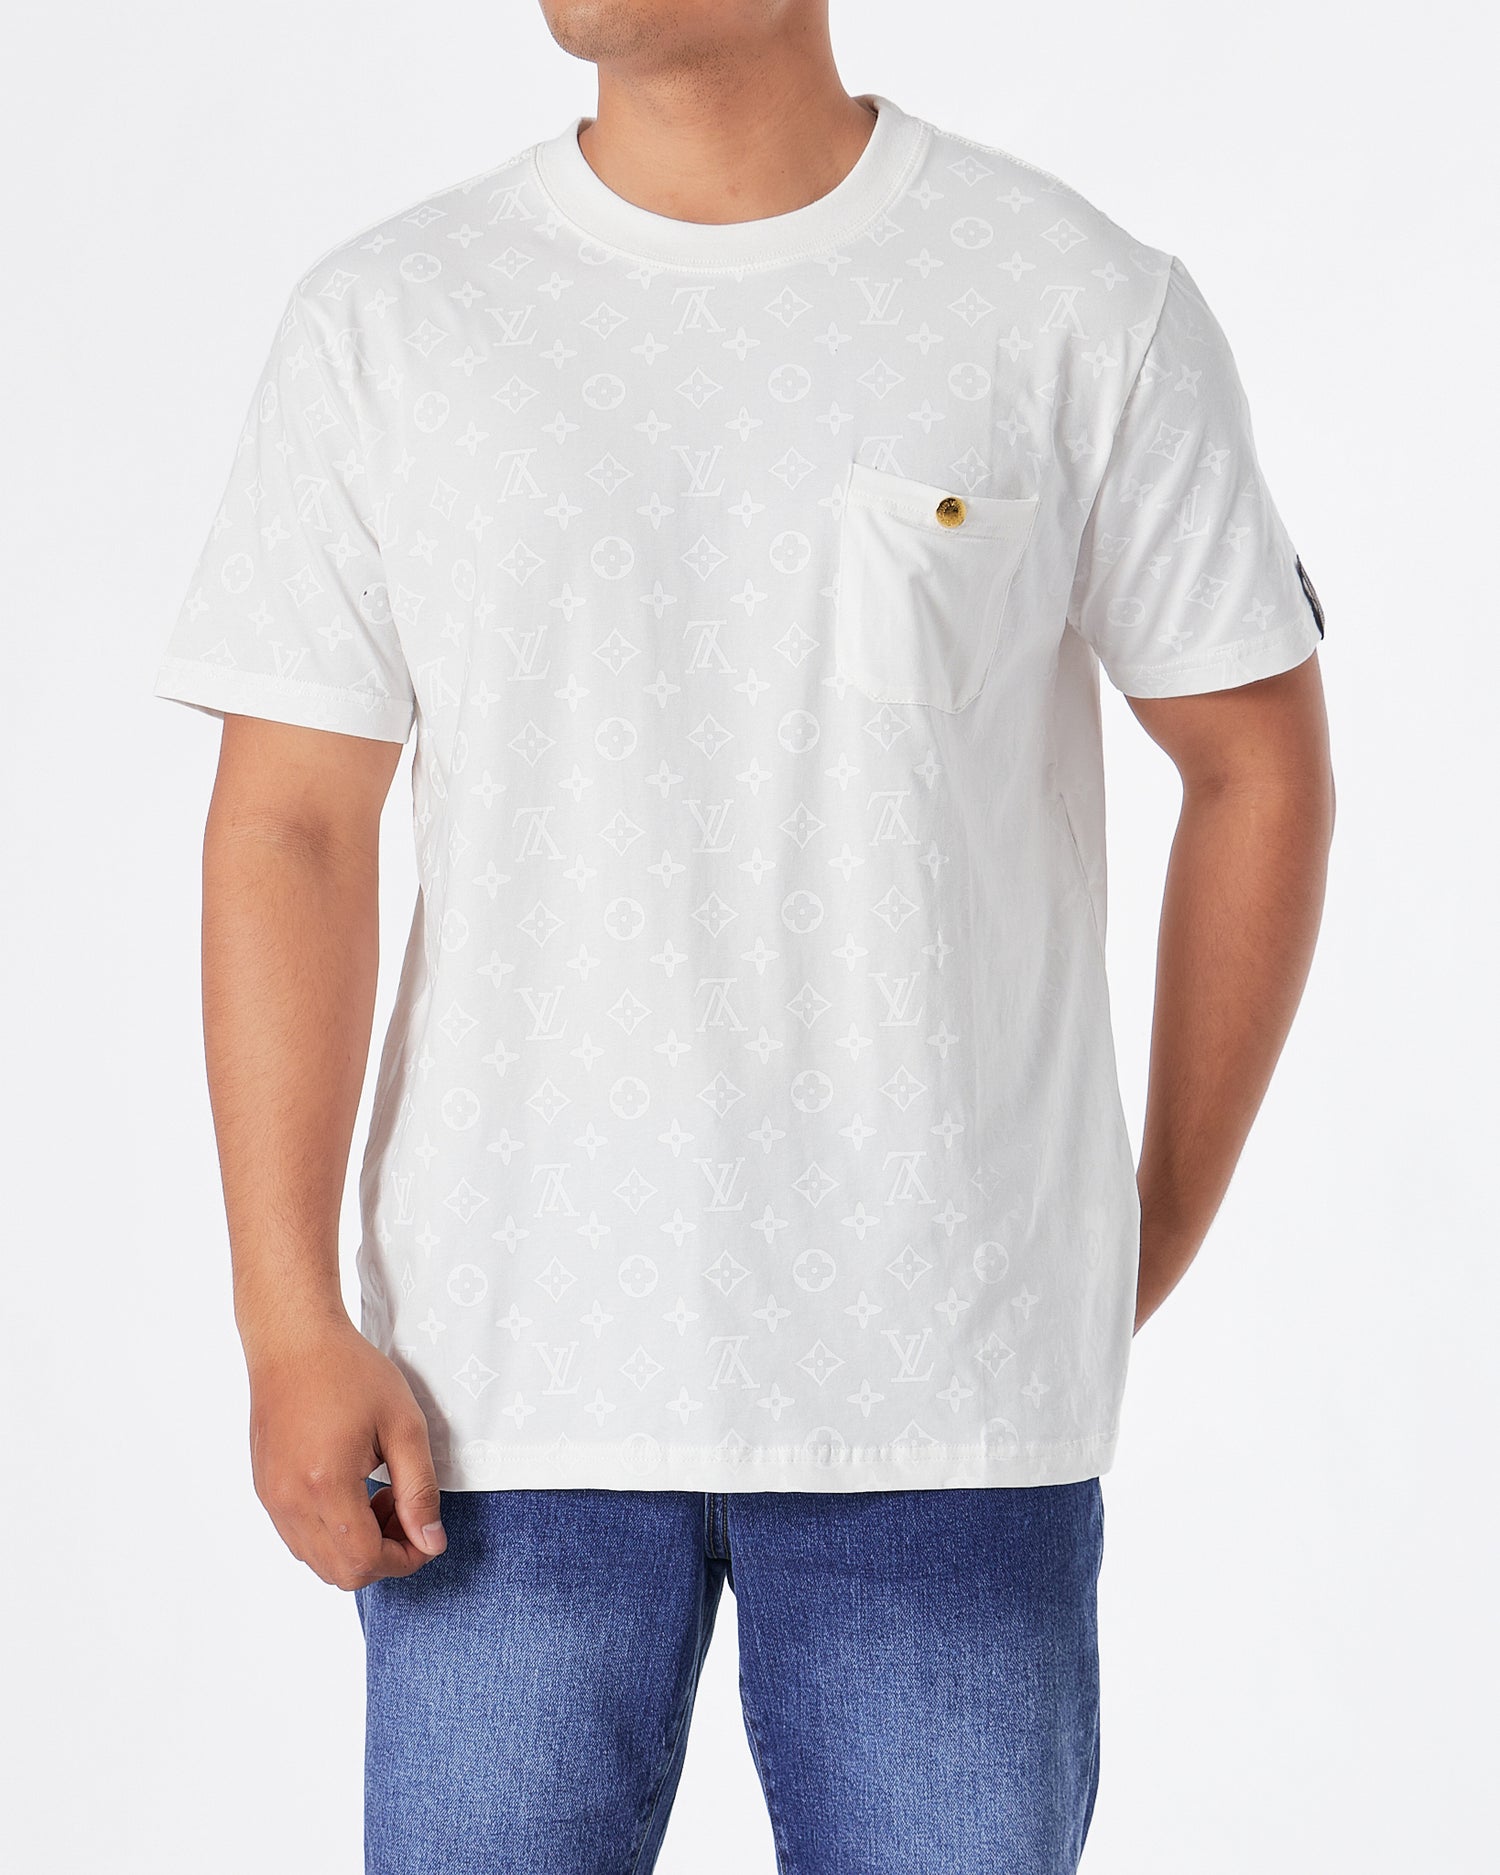 LV Monogram Over Printed Men White  T-Shirt 24.90